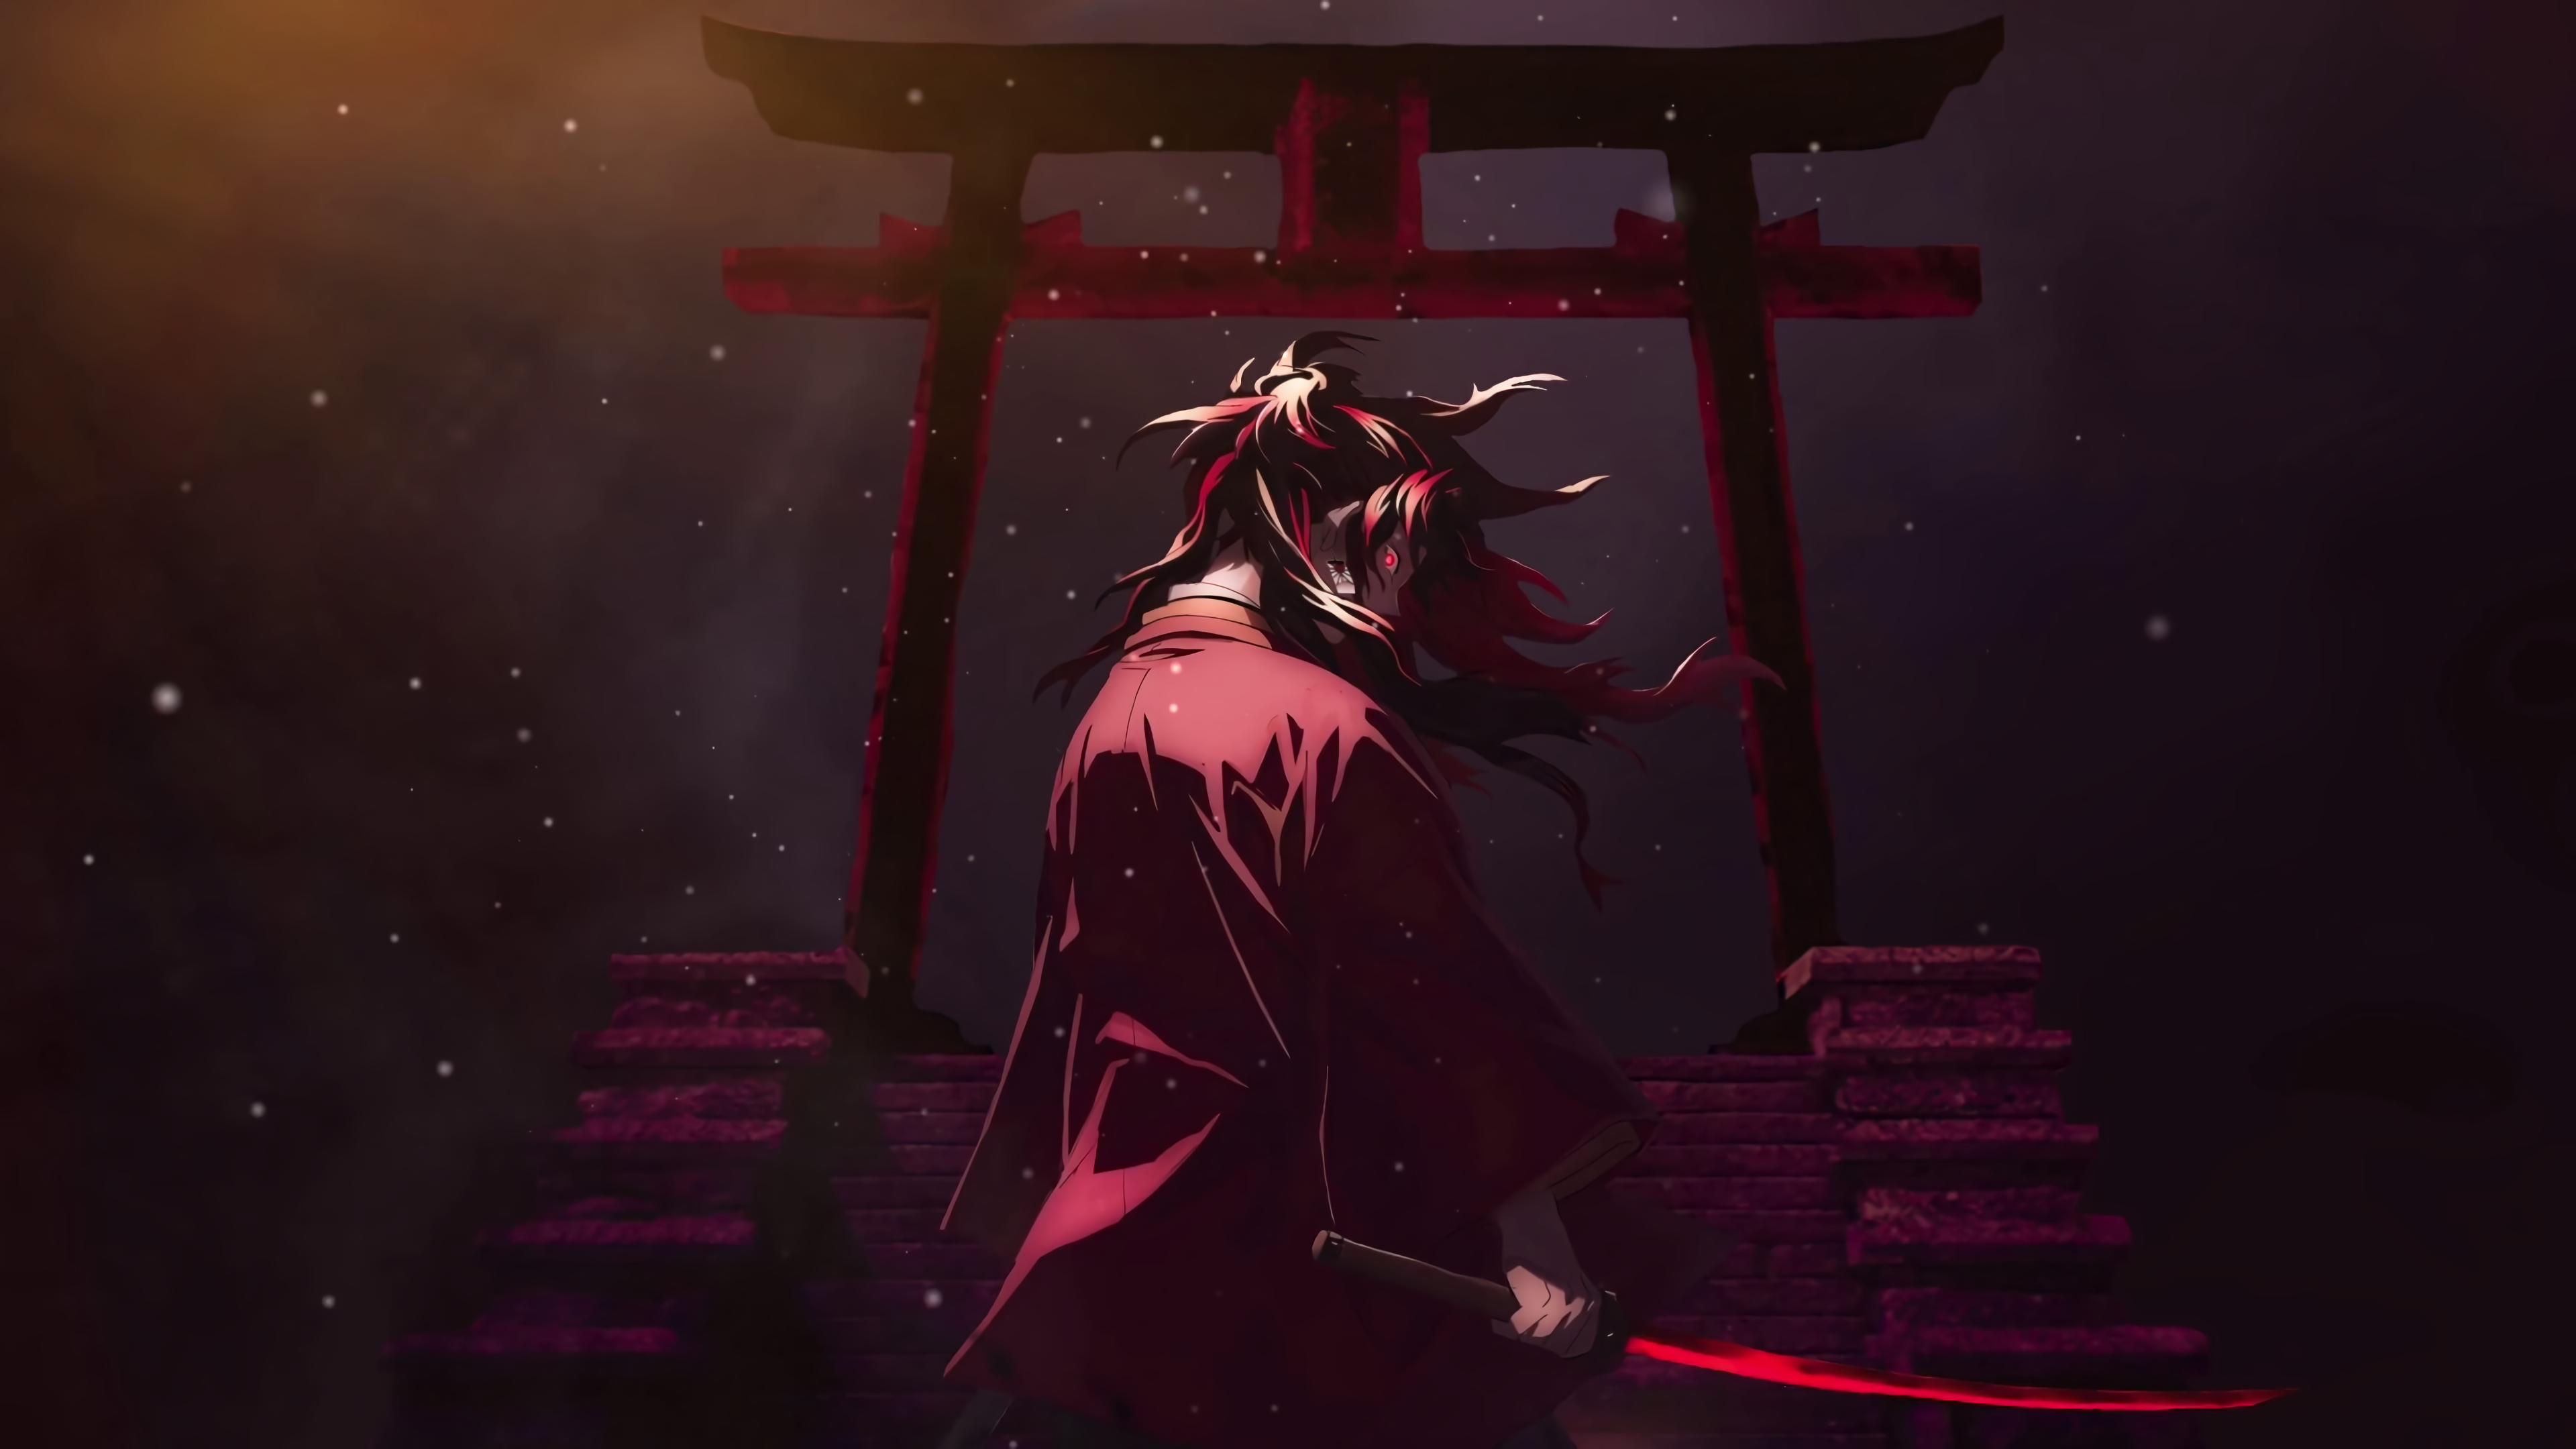 Anime 3840x2160 Kimetsu no Yaiba Yoriichi Yoriichi Tsugikuni demon eyes Demon face anime men torii katana sword glowing eyes stairs